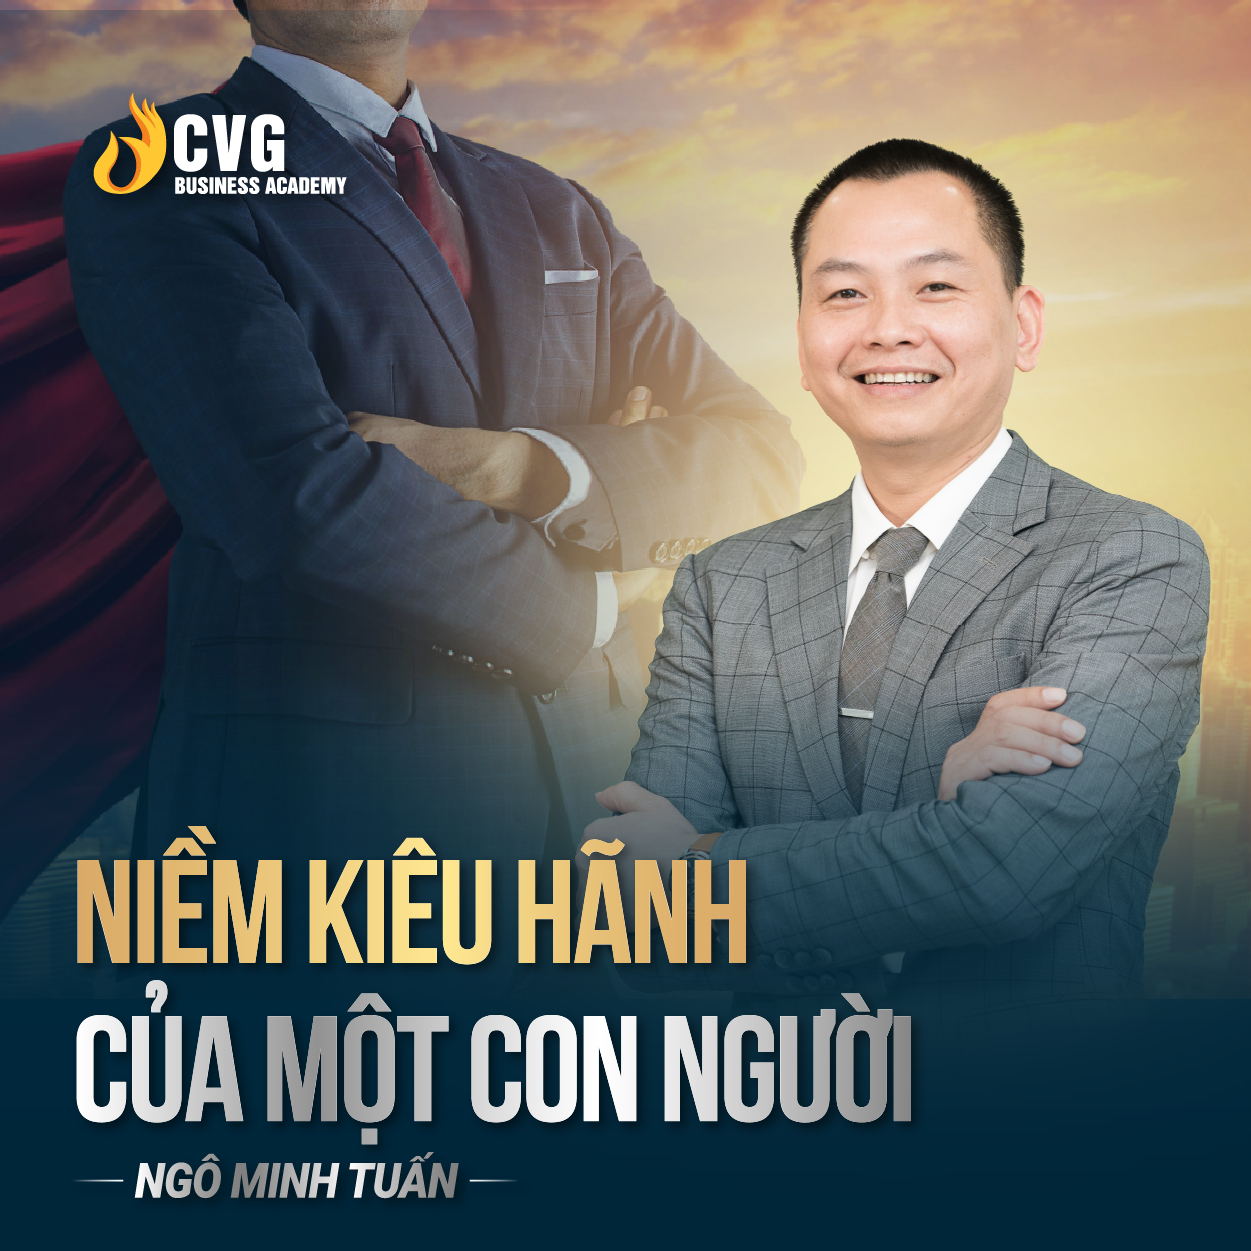 NIỀM KIÊU HÃNH CỦA CON NGƯỜI | Ngô Minh Tuấn | Học Viện CEO Việt Nam Global